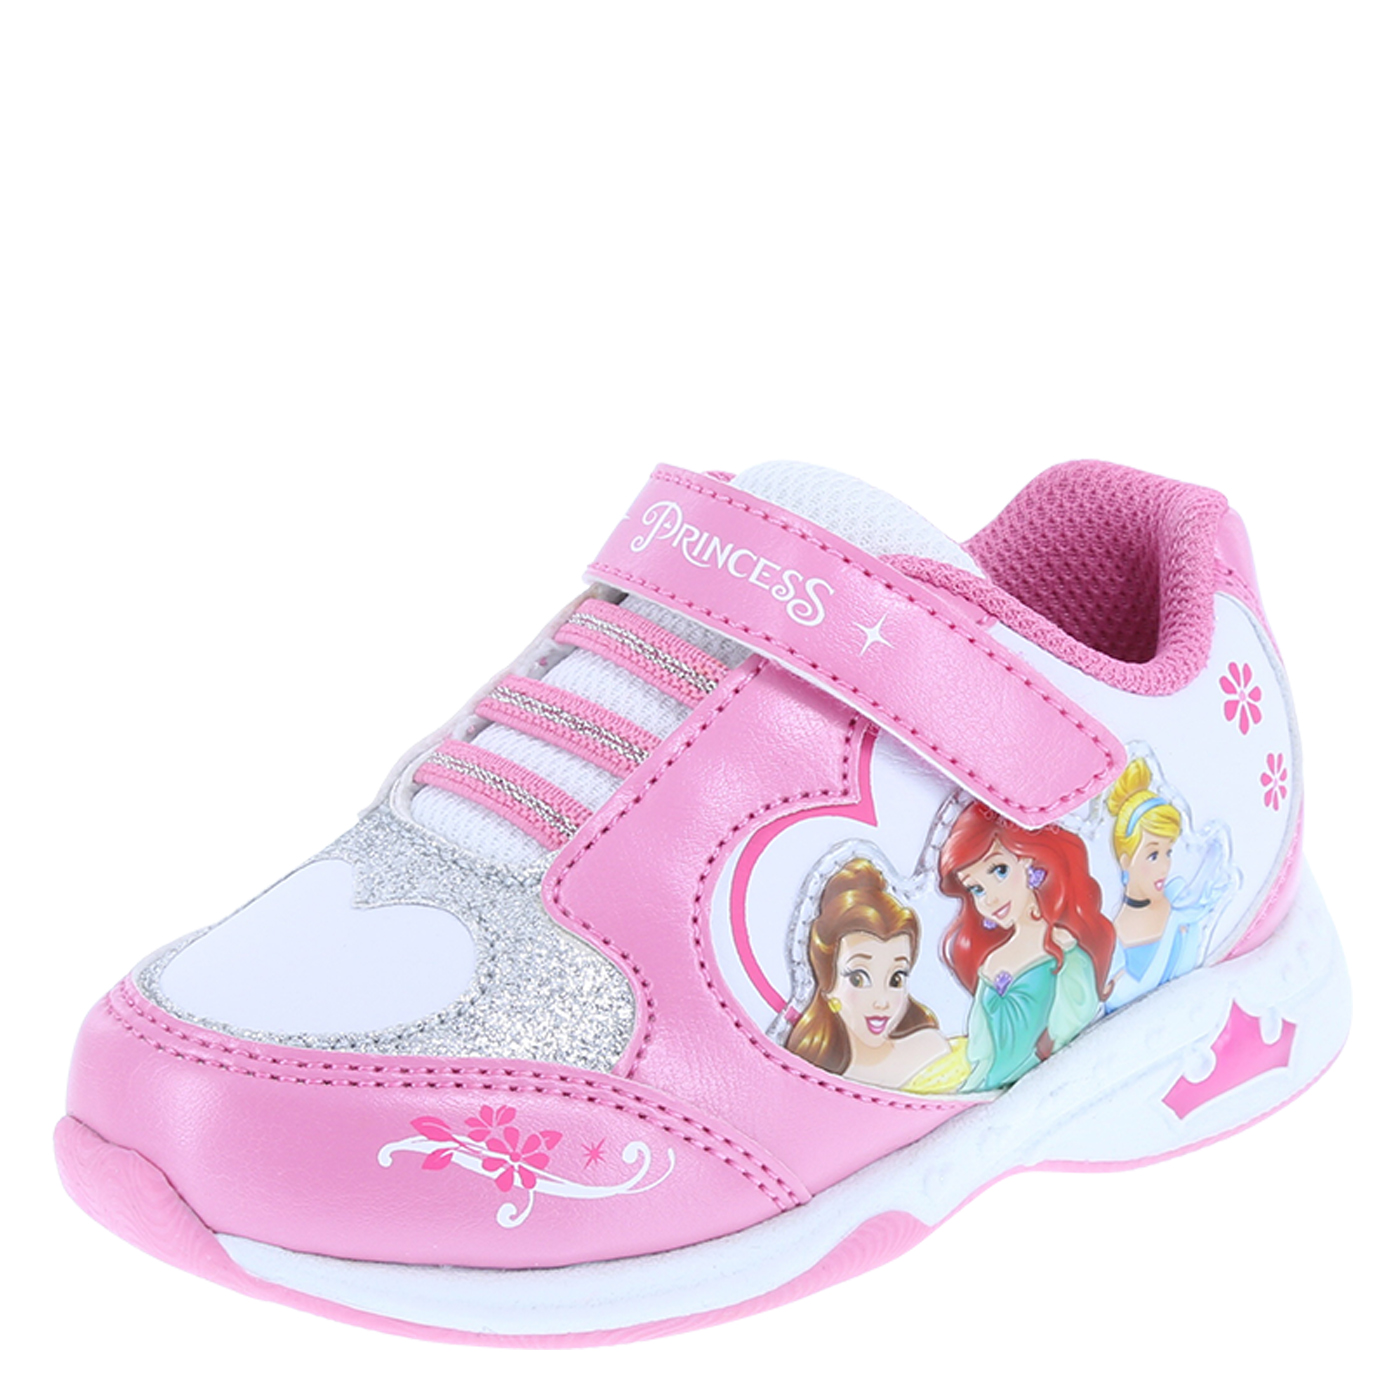 Disney Princess Princess Toddler Light-Up Shoe | Payless